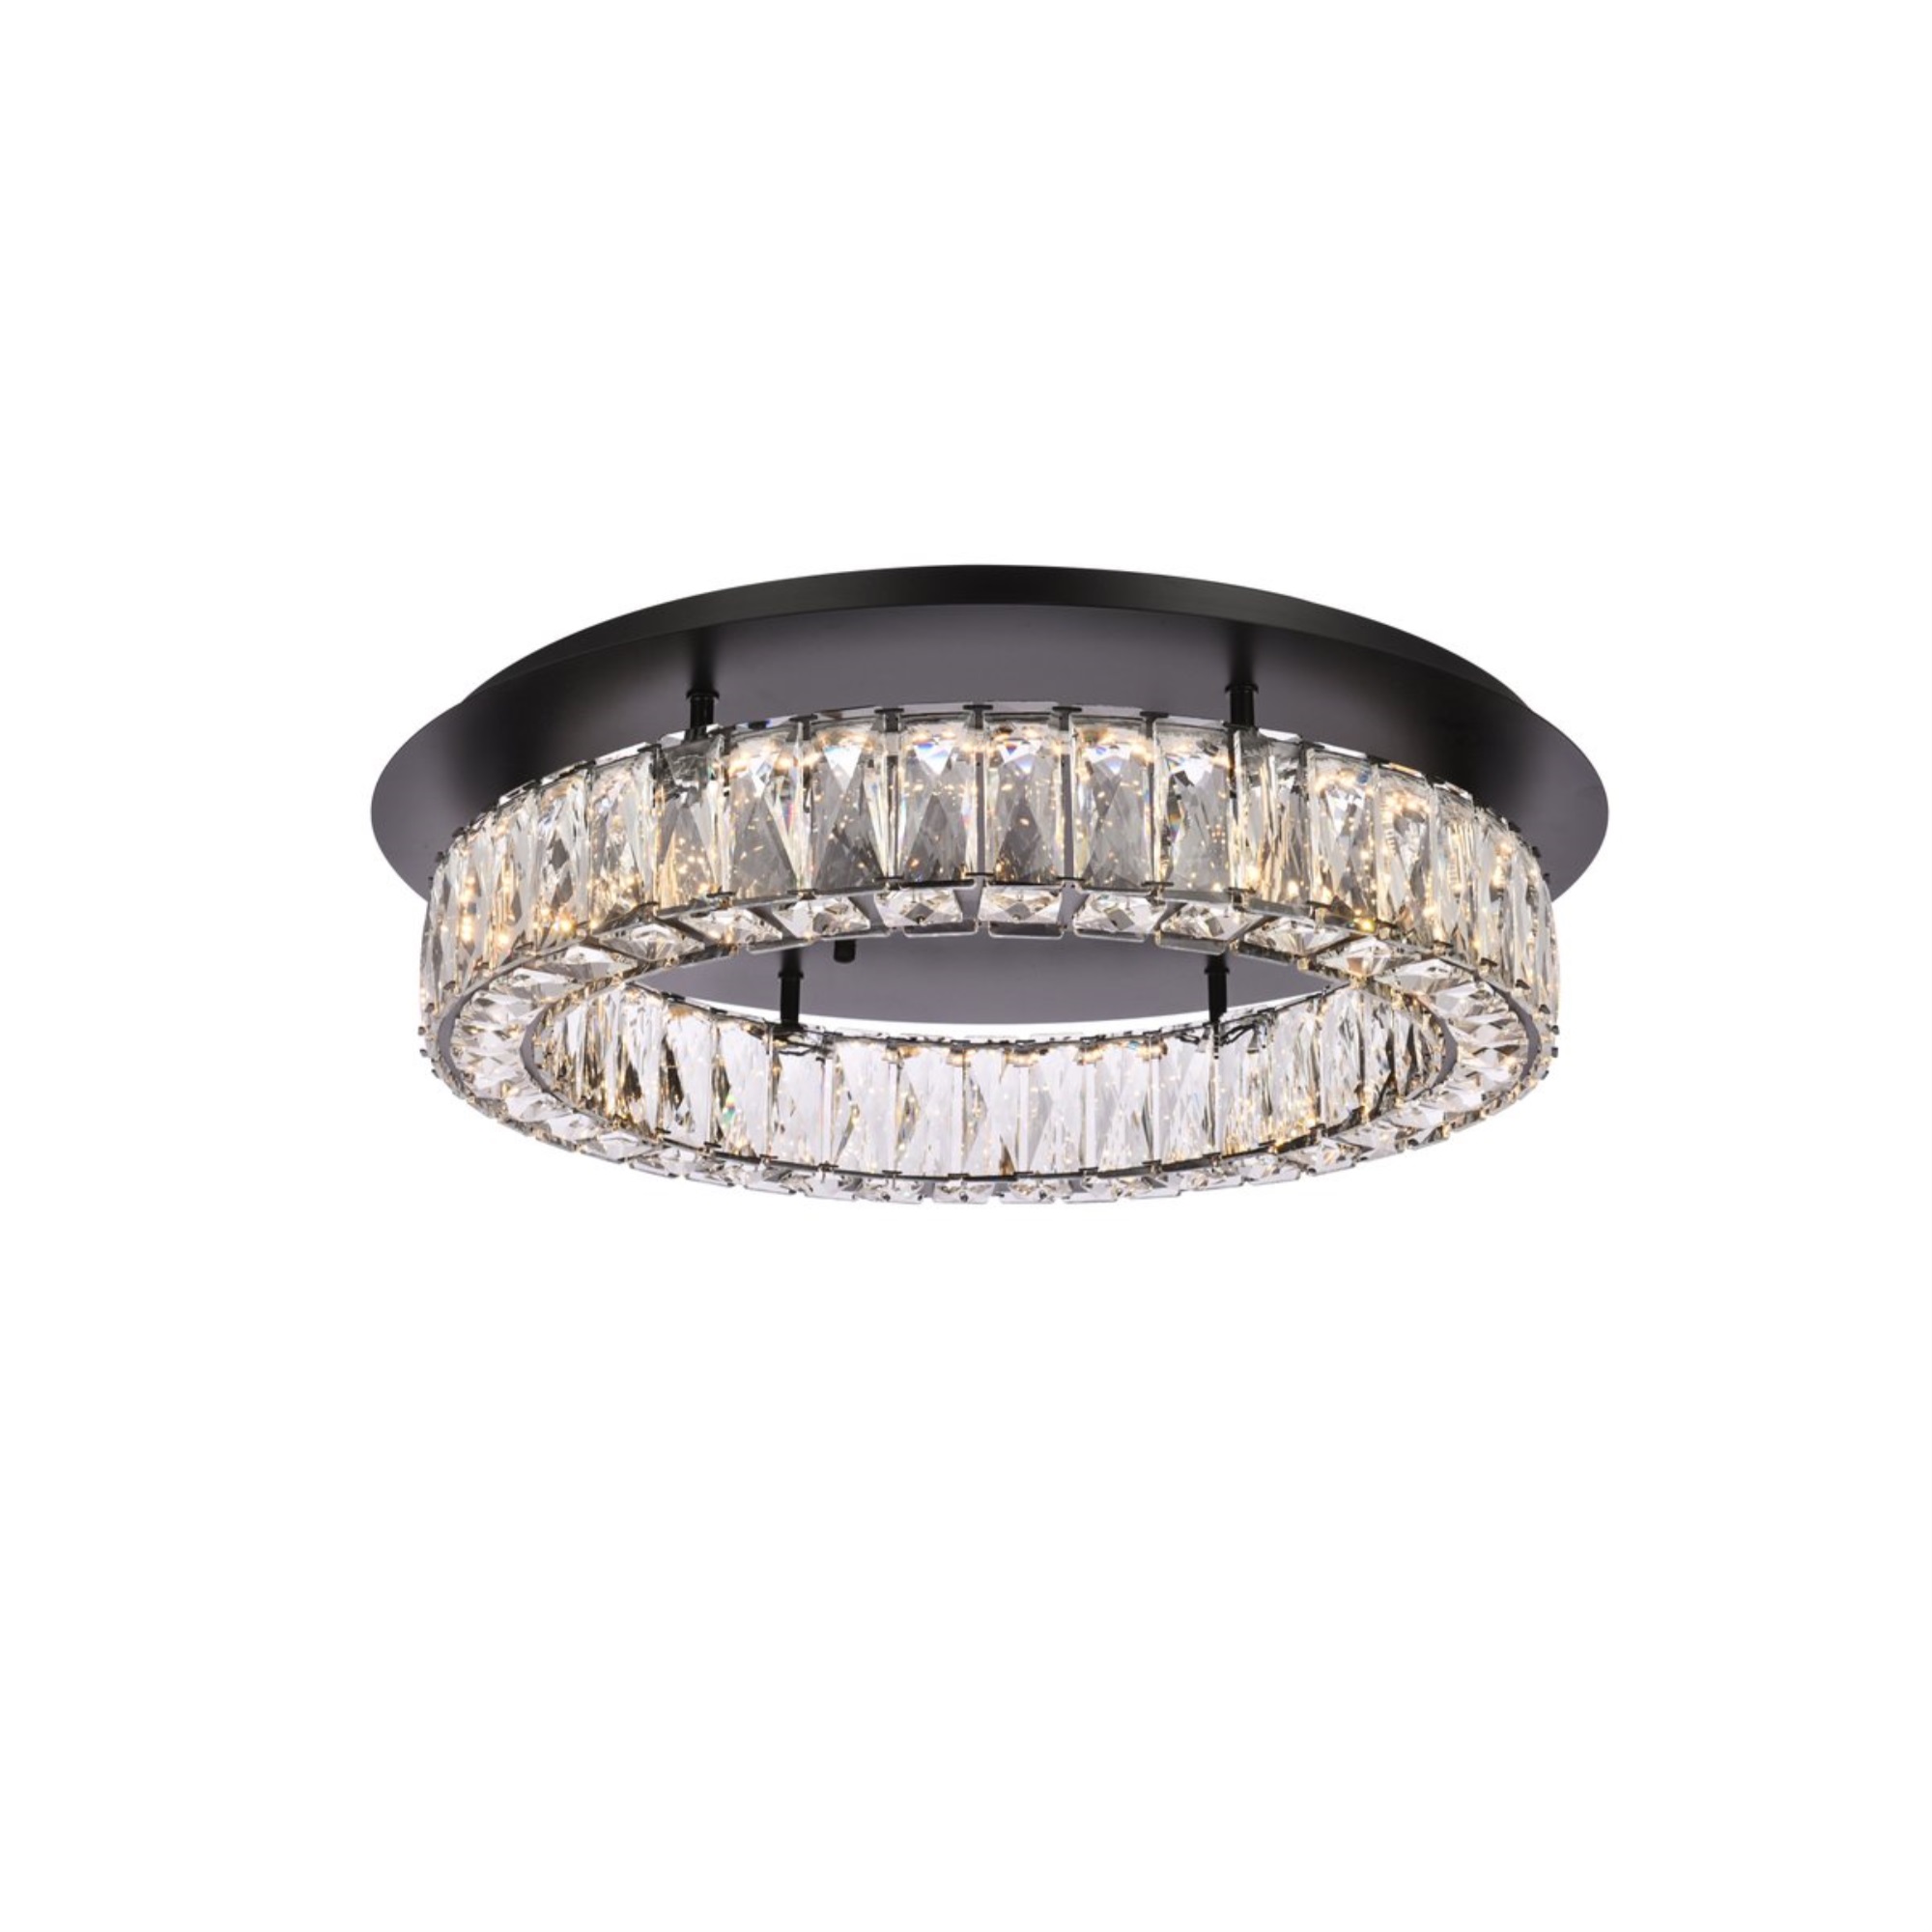 Elegant Lighting Monroe 22 inch LED single flush mount in black